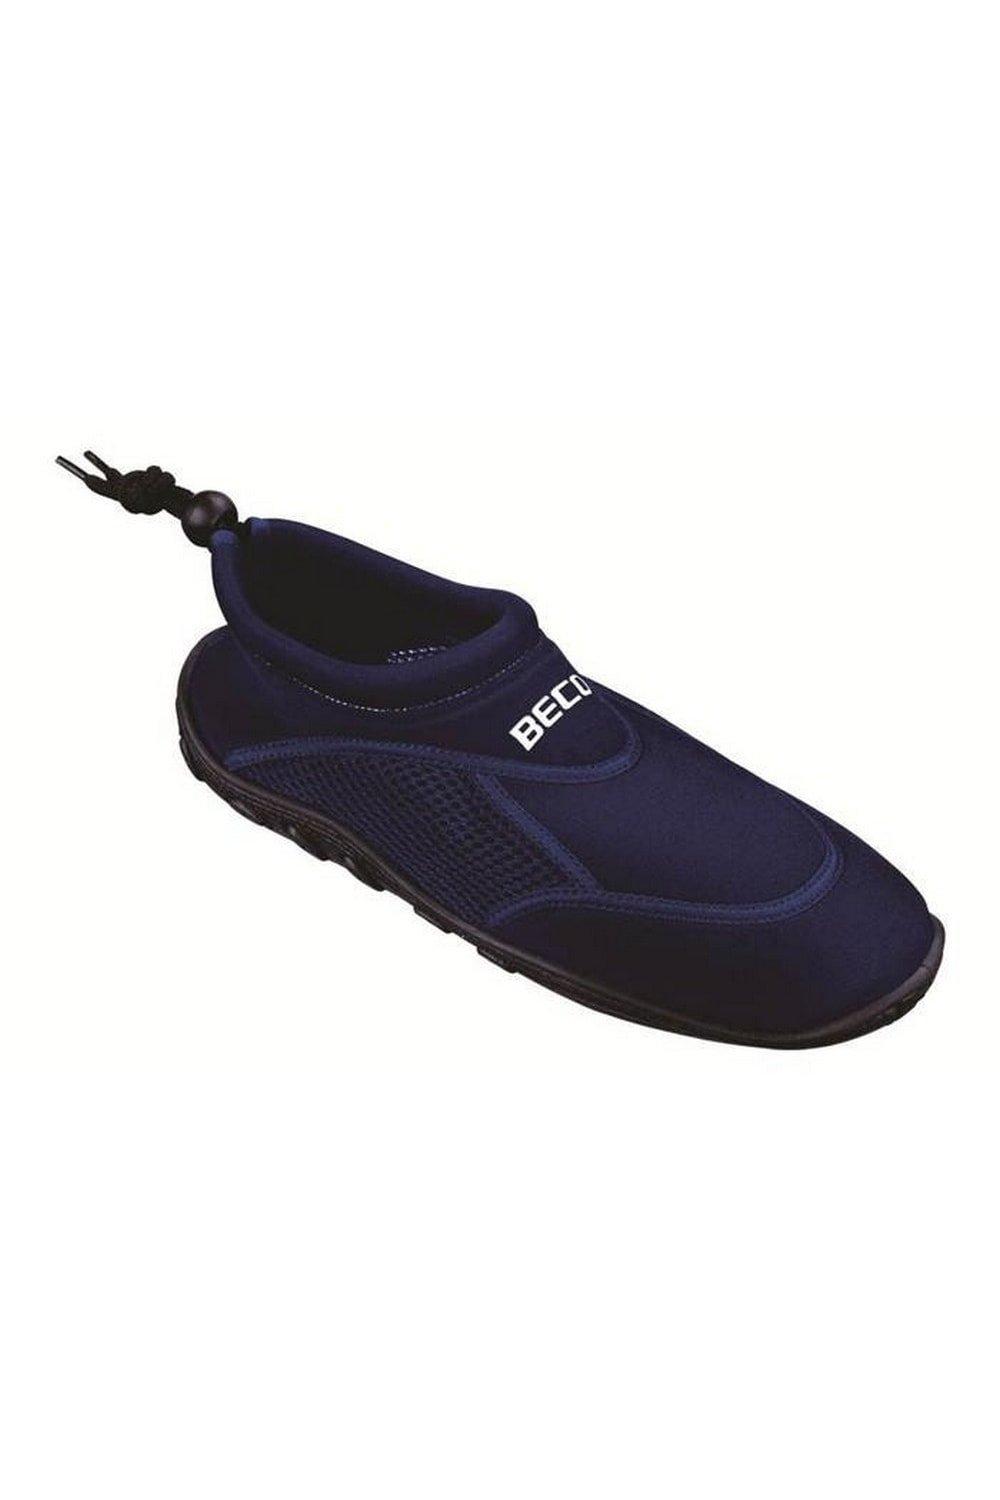 Обувь для воды Sealife Beco, темно-синий